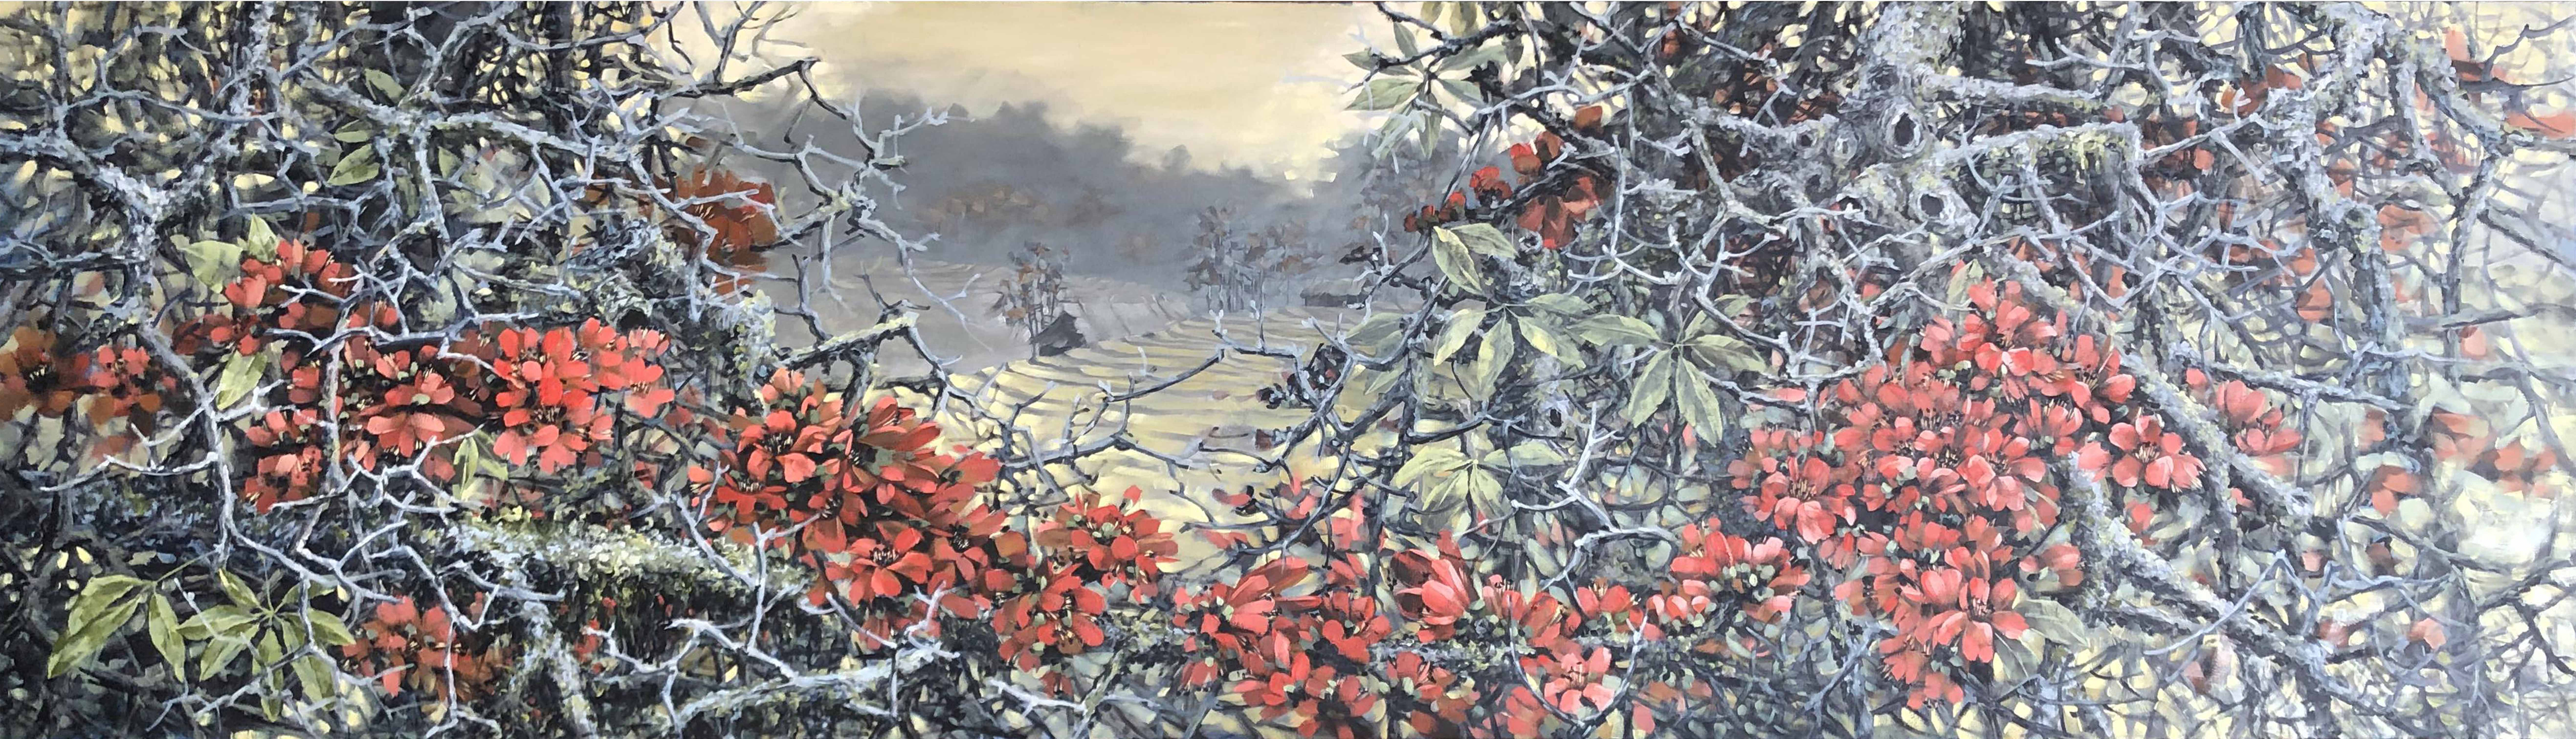 Những góc nhìn khác về Tây Bắc qua tranh sơn dầu phong cảnh của hoạ sĩ Lê Ngọc Hải